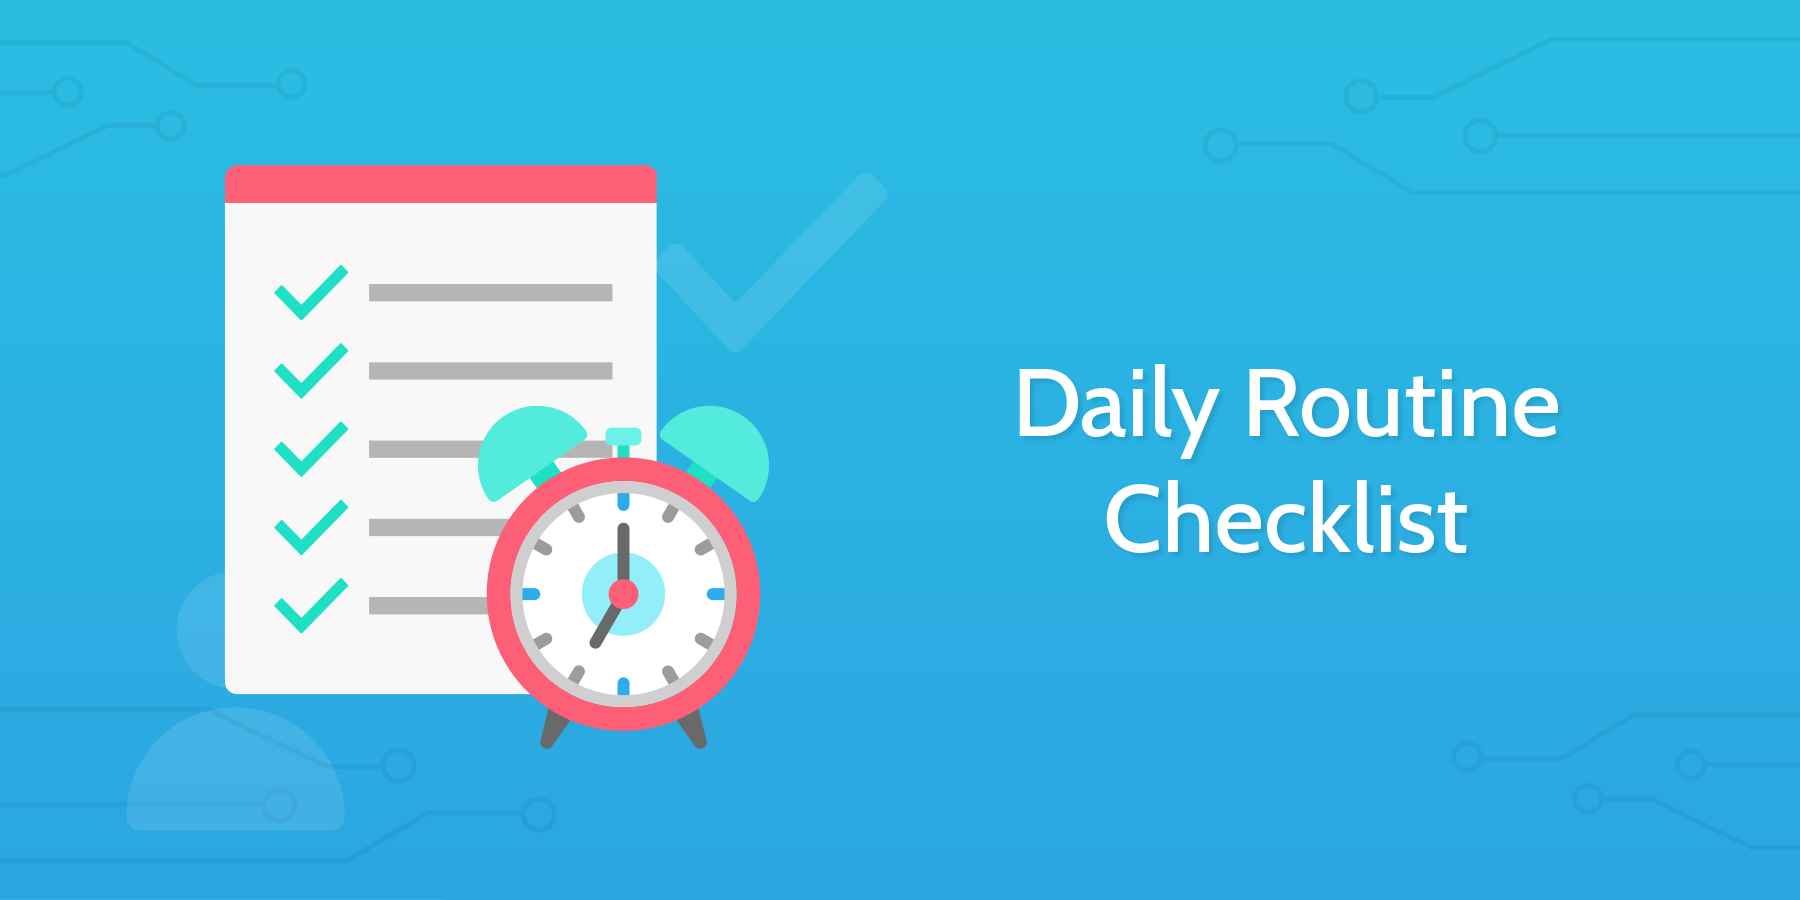 Daily Routine Checklist